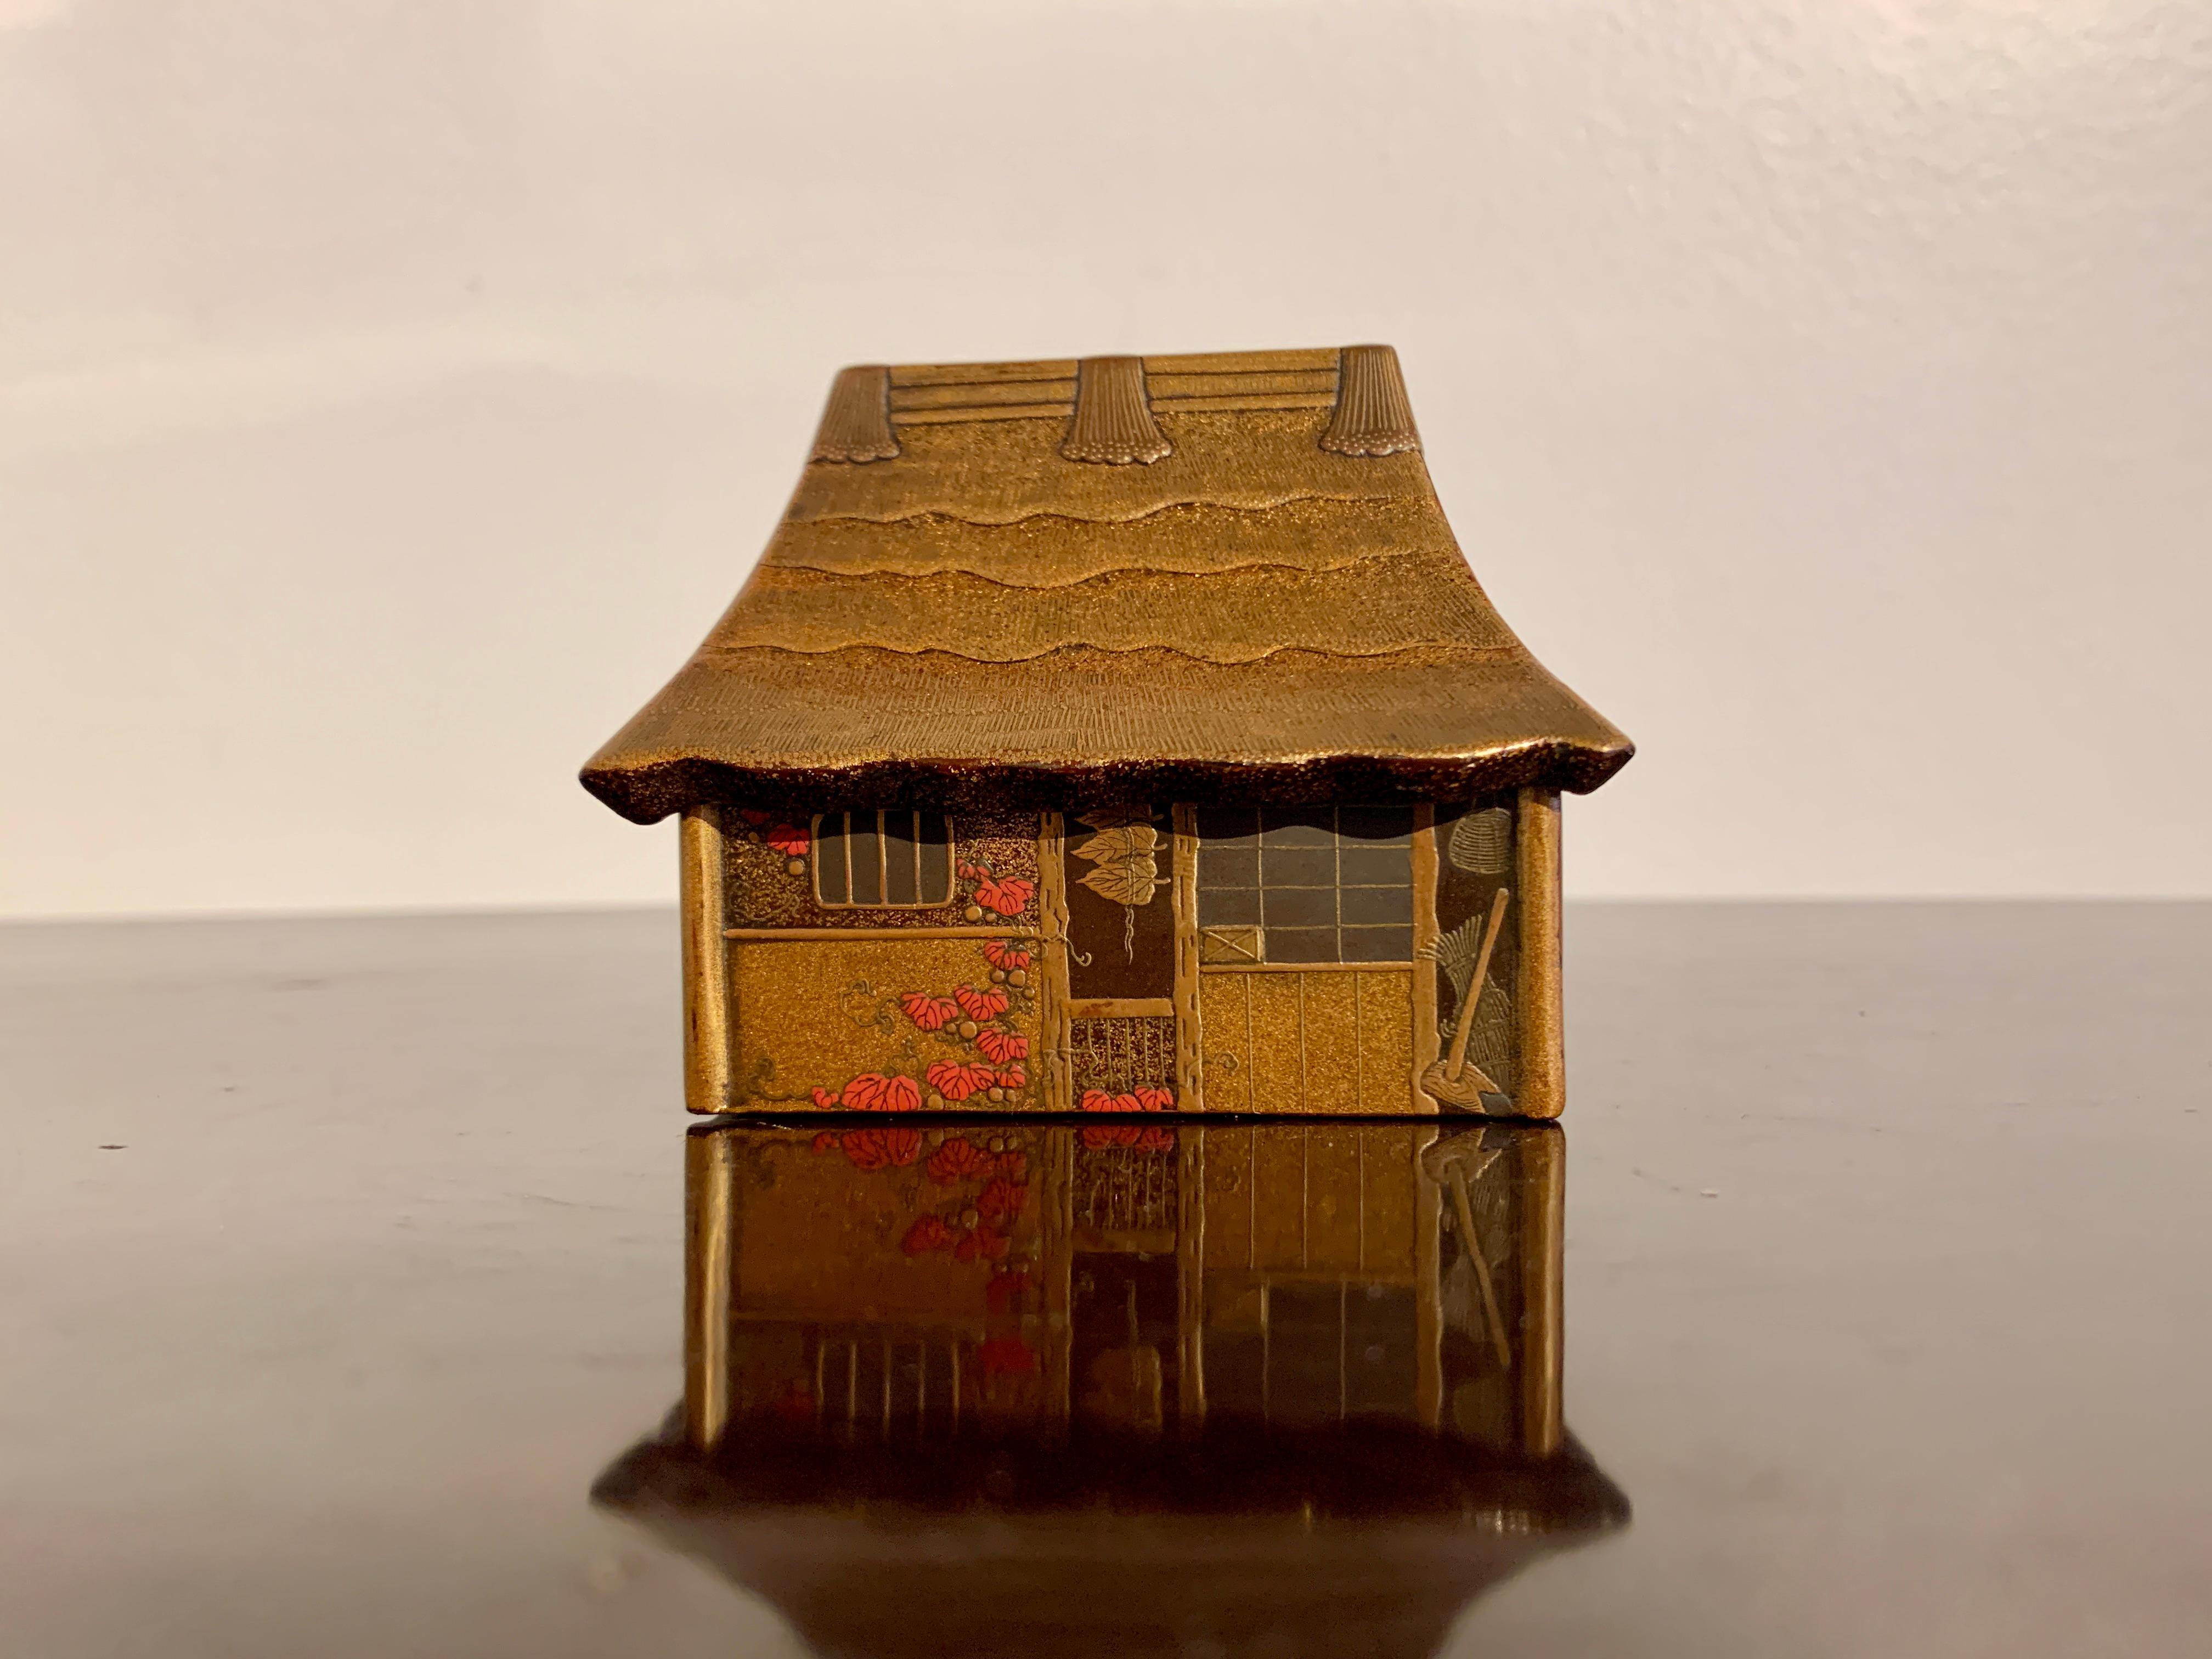 Eine reizvolle und aufwendig verzierte Lackdose zur Aufbewahrung von Weihrauch, kogo, in Form eines traditionellen Bauernhauses, Meiji-Periode (1864 - 1912), Ende 19.

Die Kogo, eine kleine Kiste zur Aufbewahrung von Räucherstäbchen, hat die